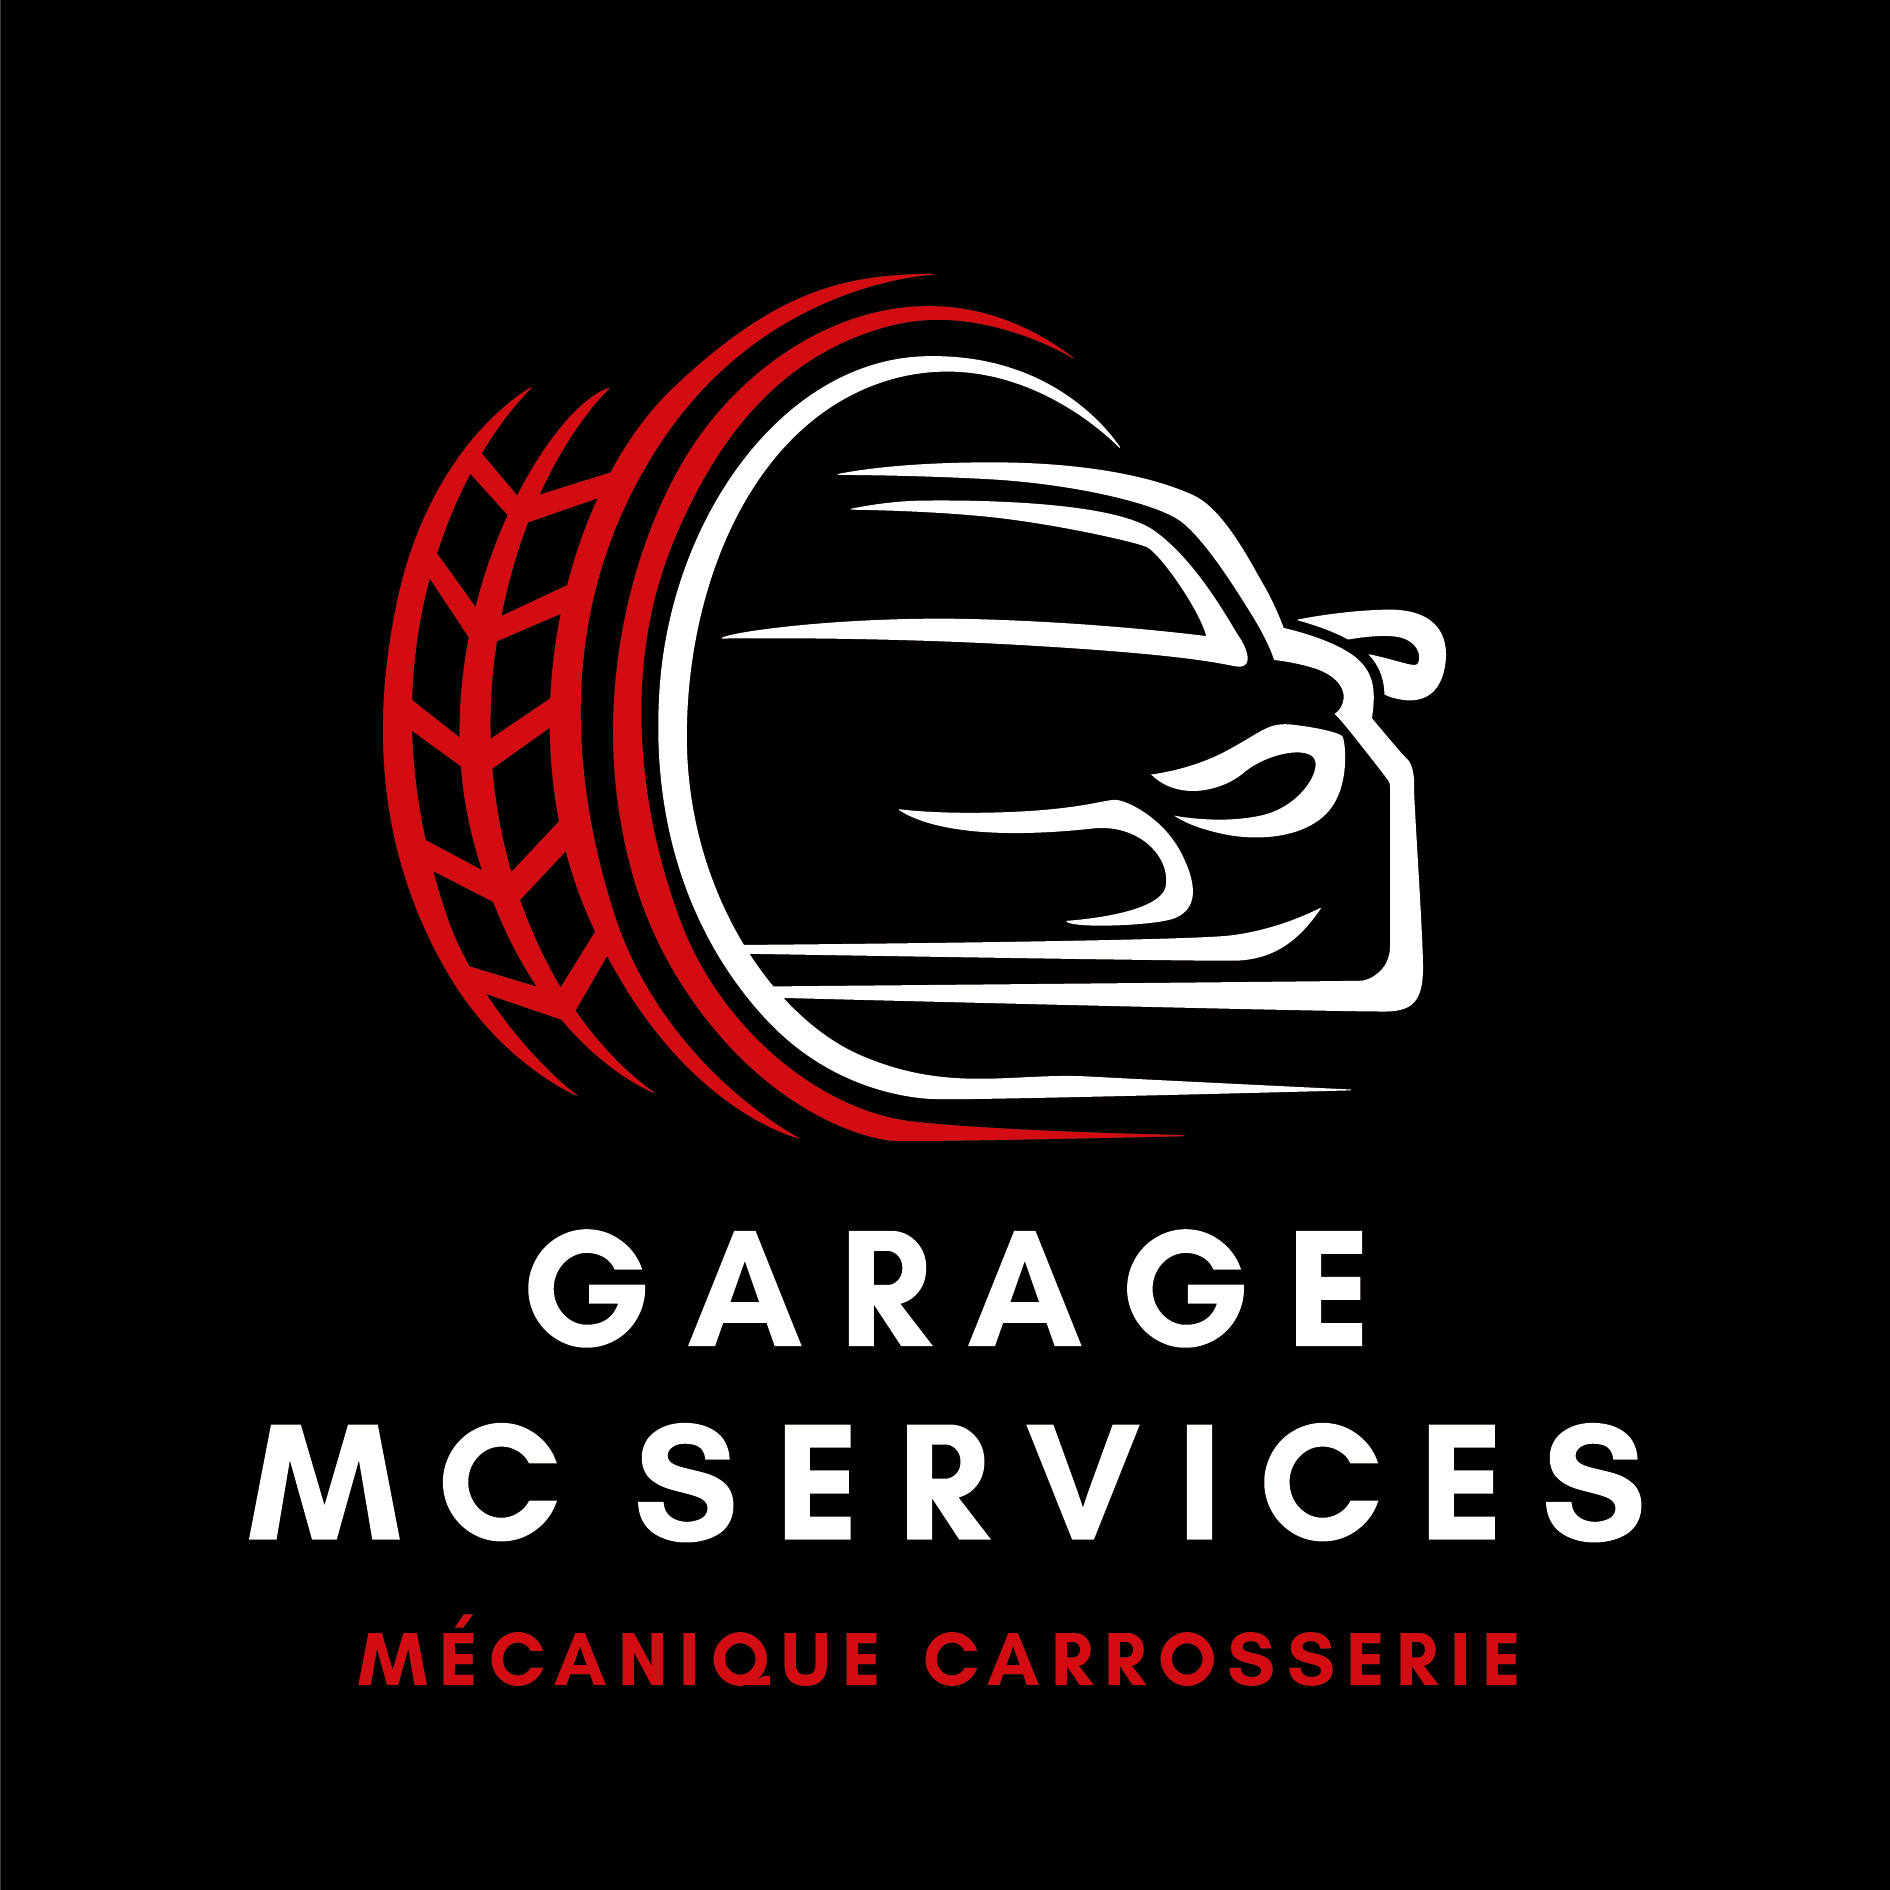 GARAGE MC SERVICES GARAGE MISEREY SALINES BESANCON